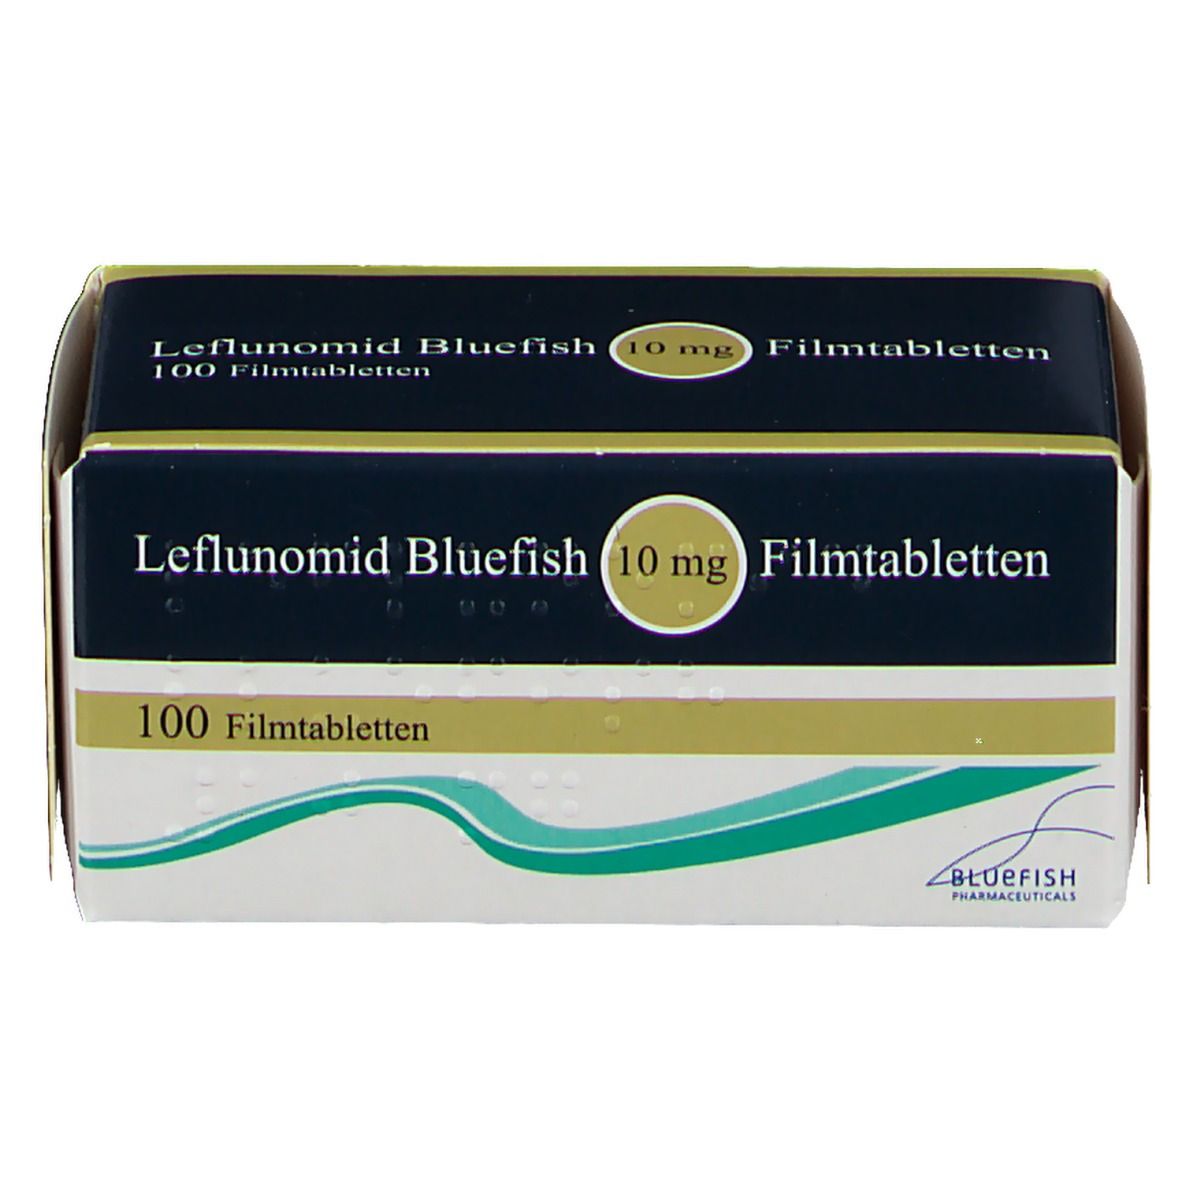 Leflunomid Bluefish 10 mg